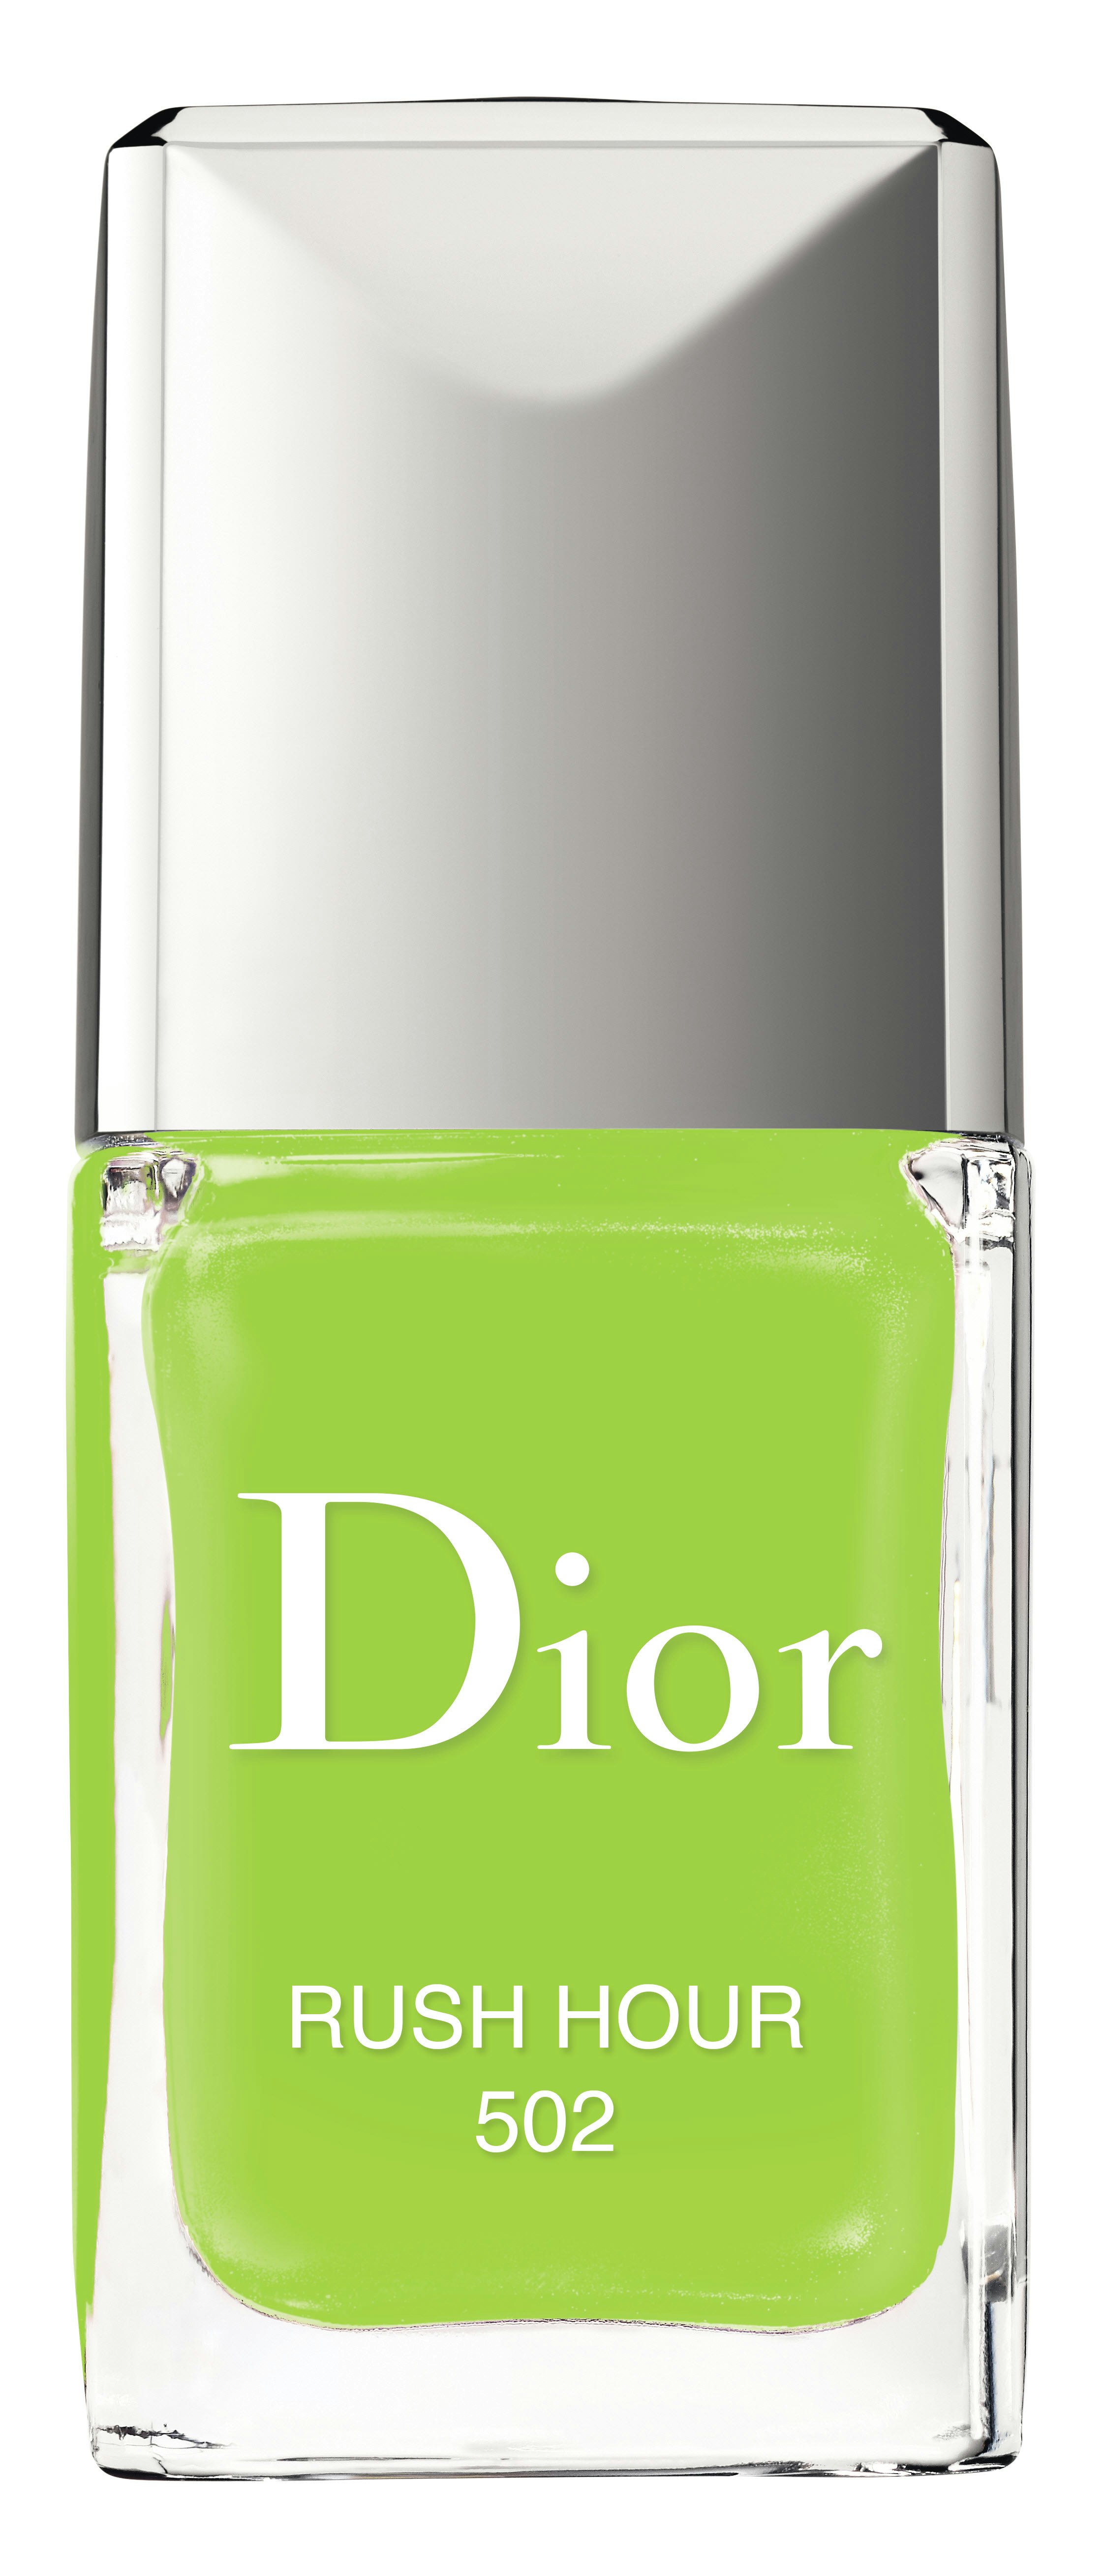 dior green nail polish